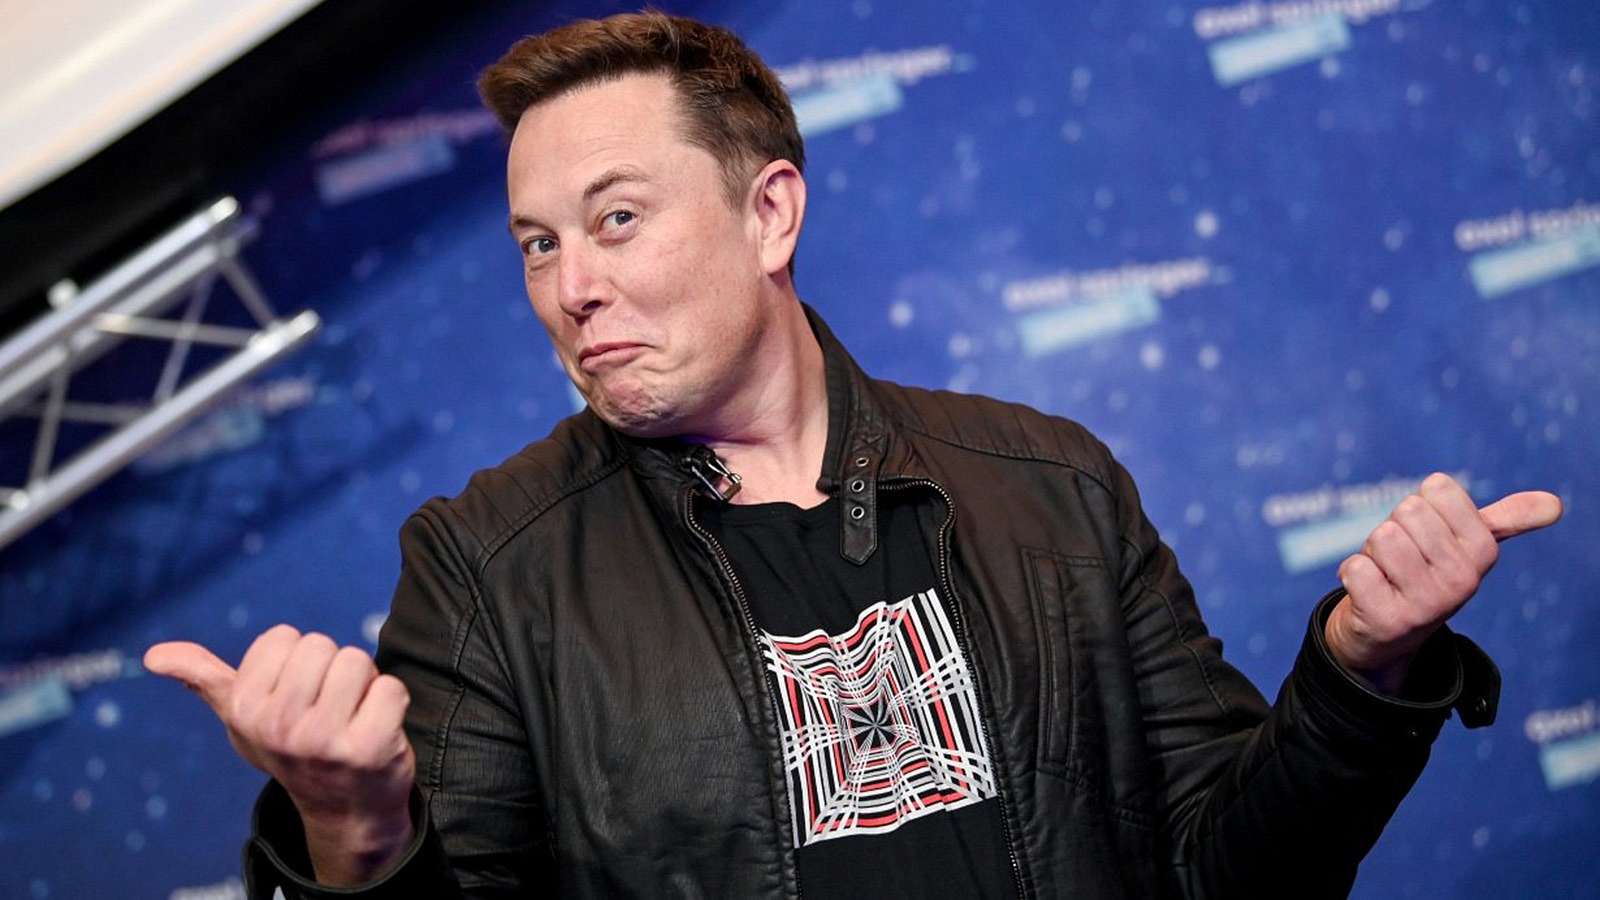 Miliardář Elon Musk zvažuje hraní League of Legends, o hře se zmínil už vícekrát